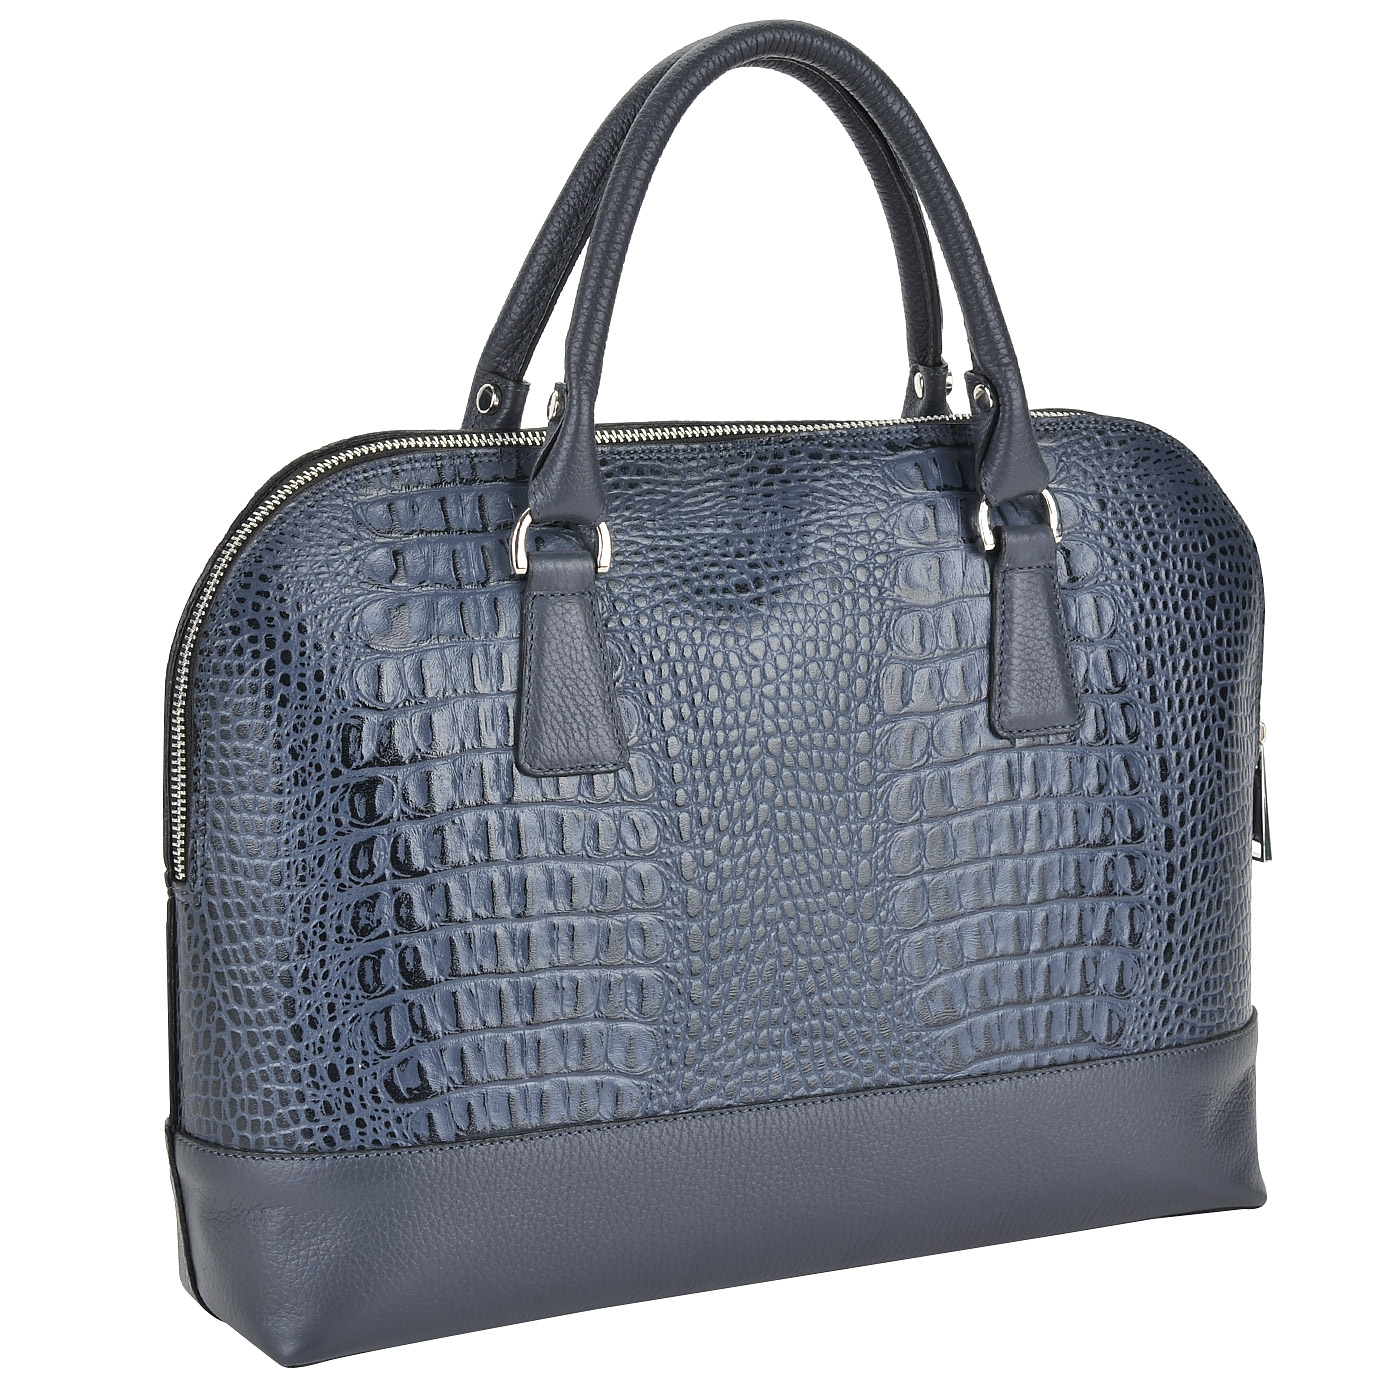 Дамская синяя сумка с отделкой под крокодиловую кожу Chatte 